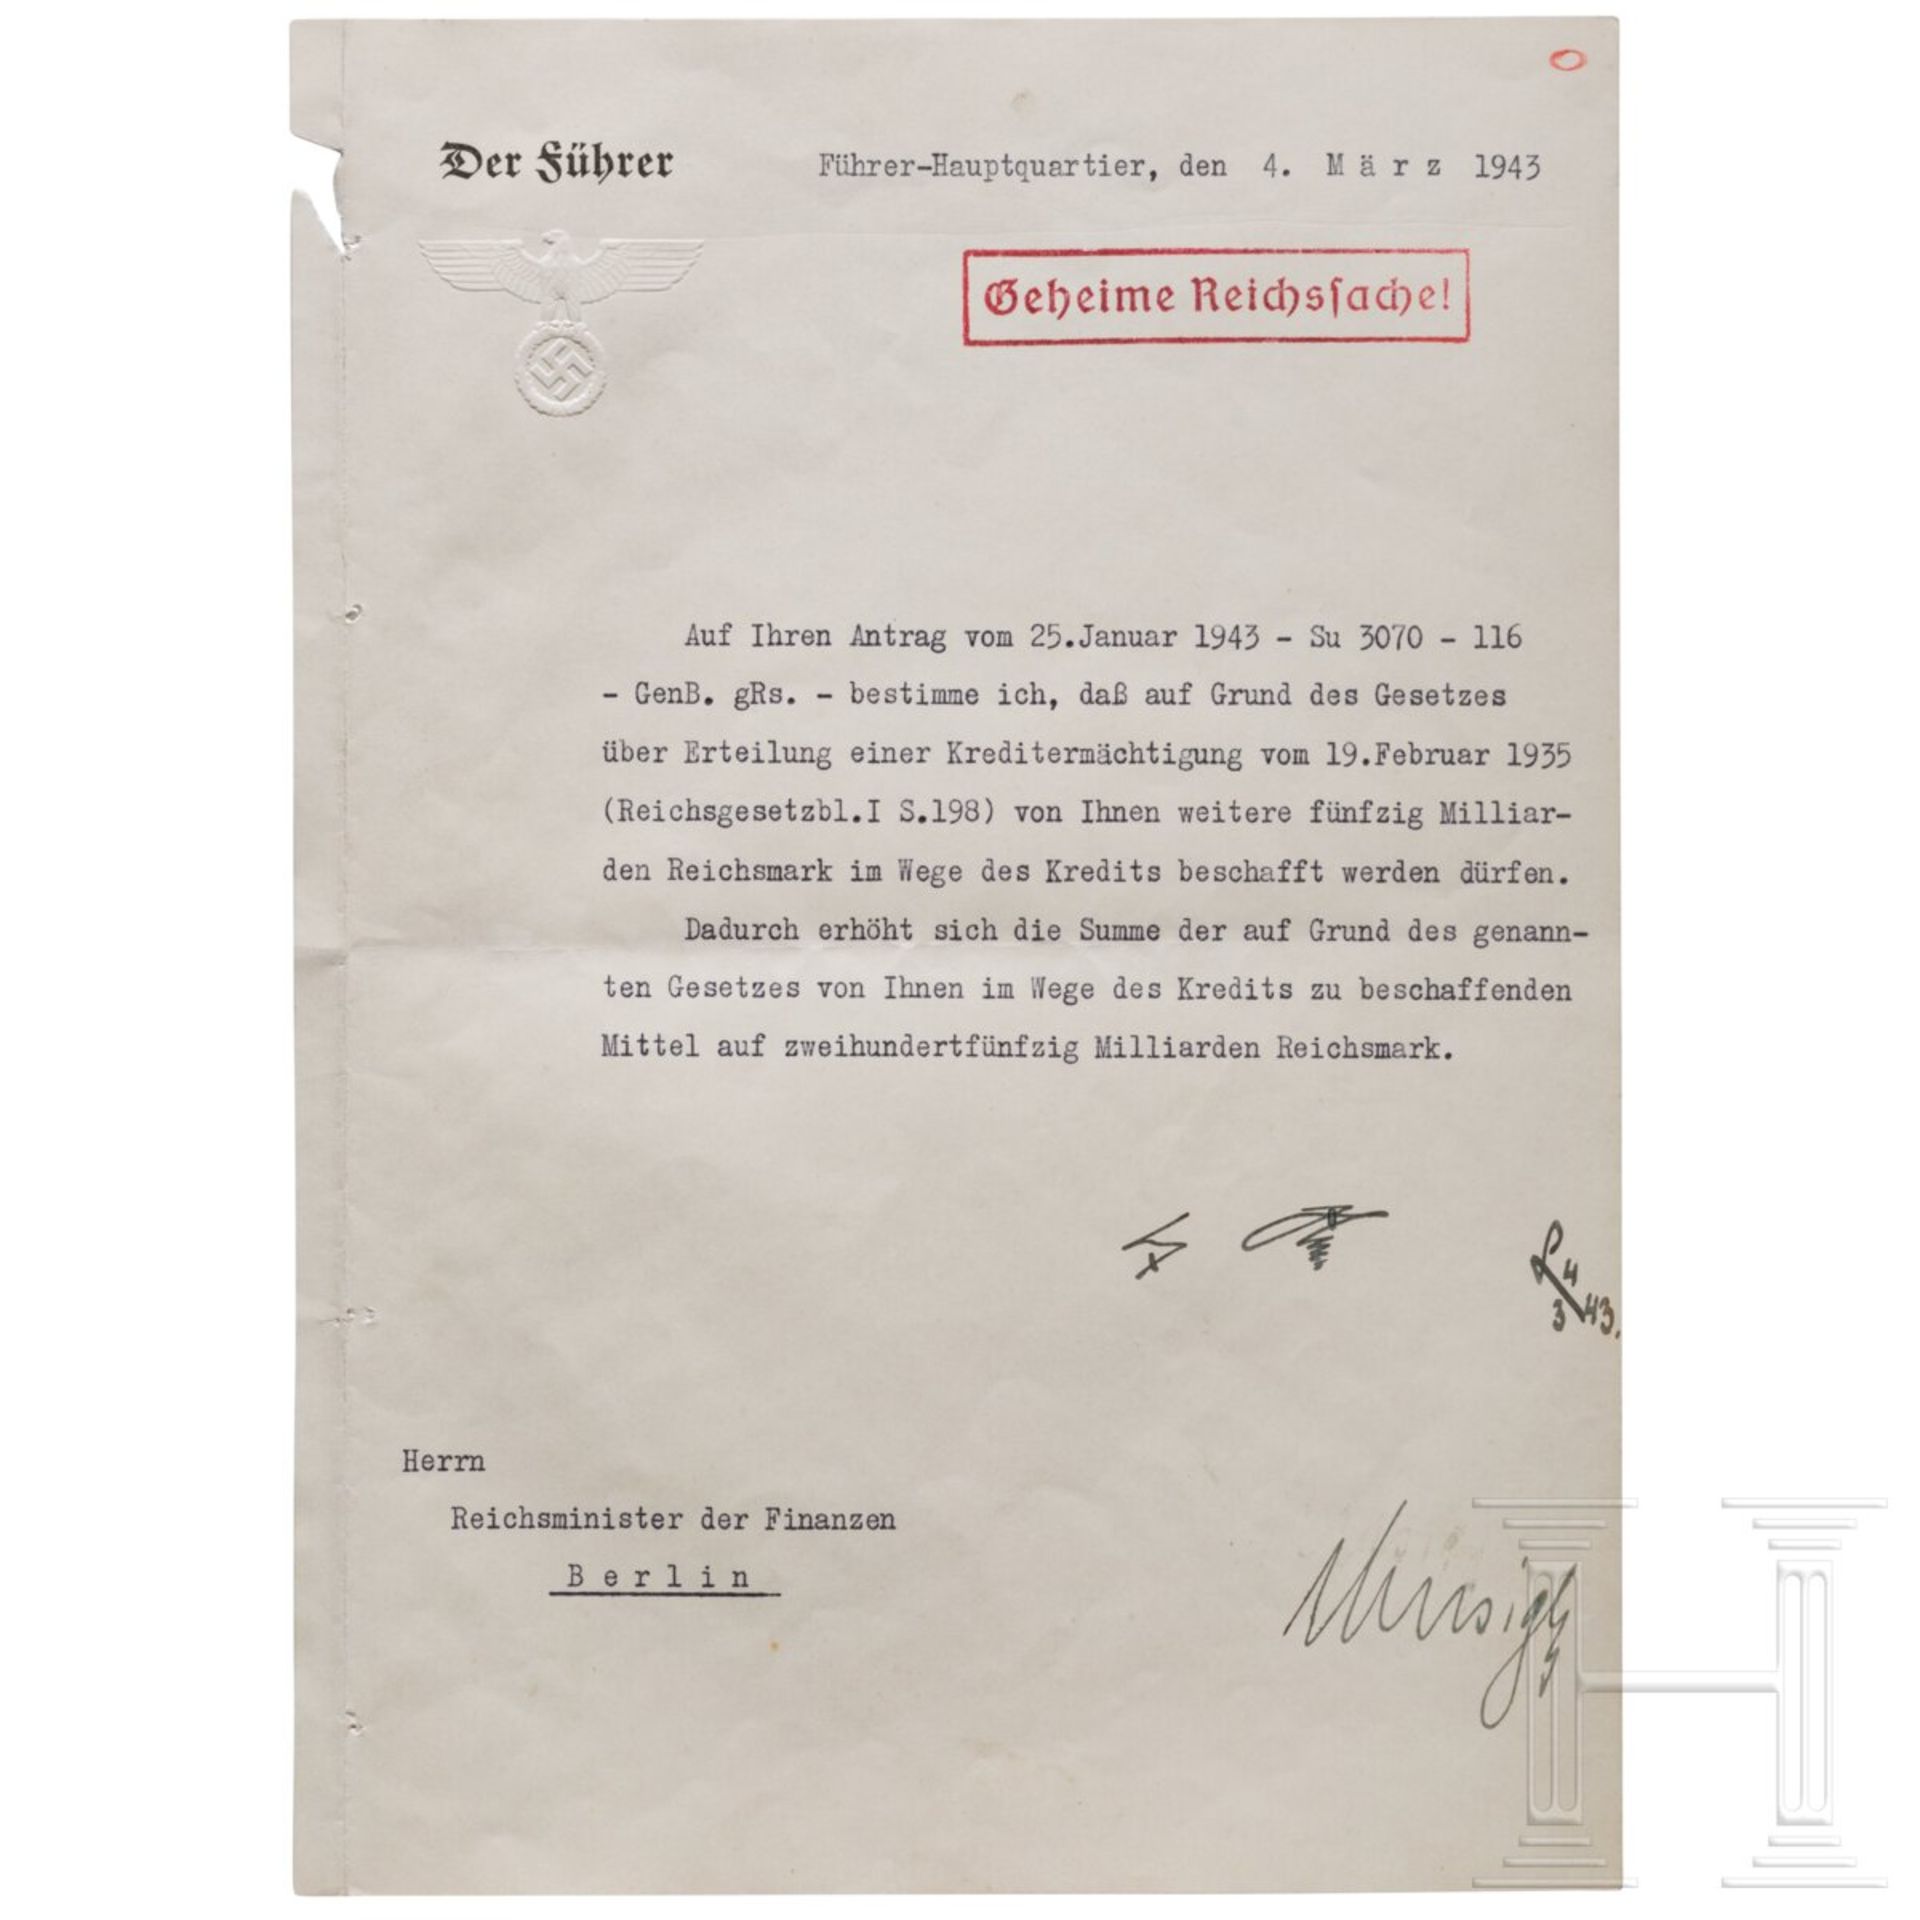 Adolf Hitler - Kreditermächtigung vom 4. März 1943 mit einer Erhöhung von 200 auf 250 Milliarden RM